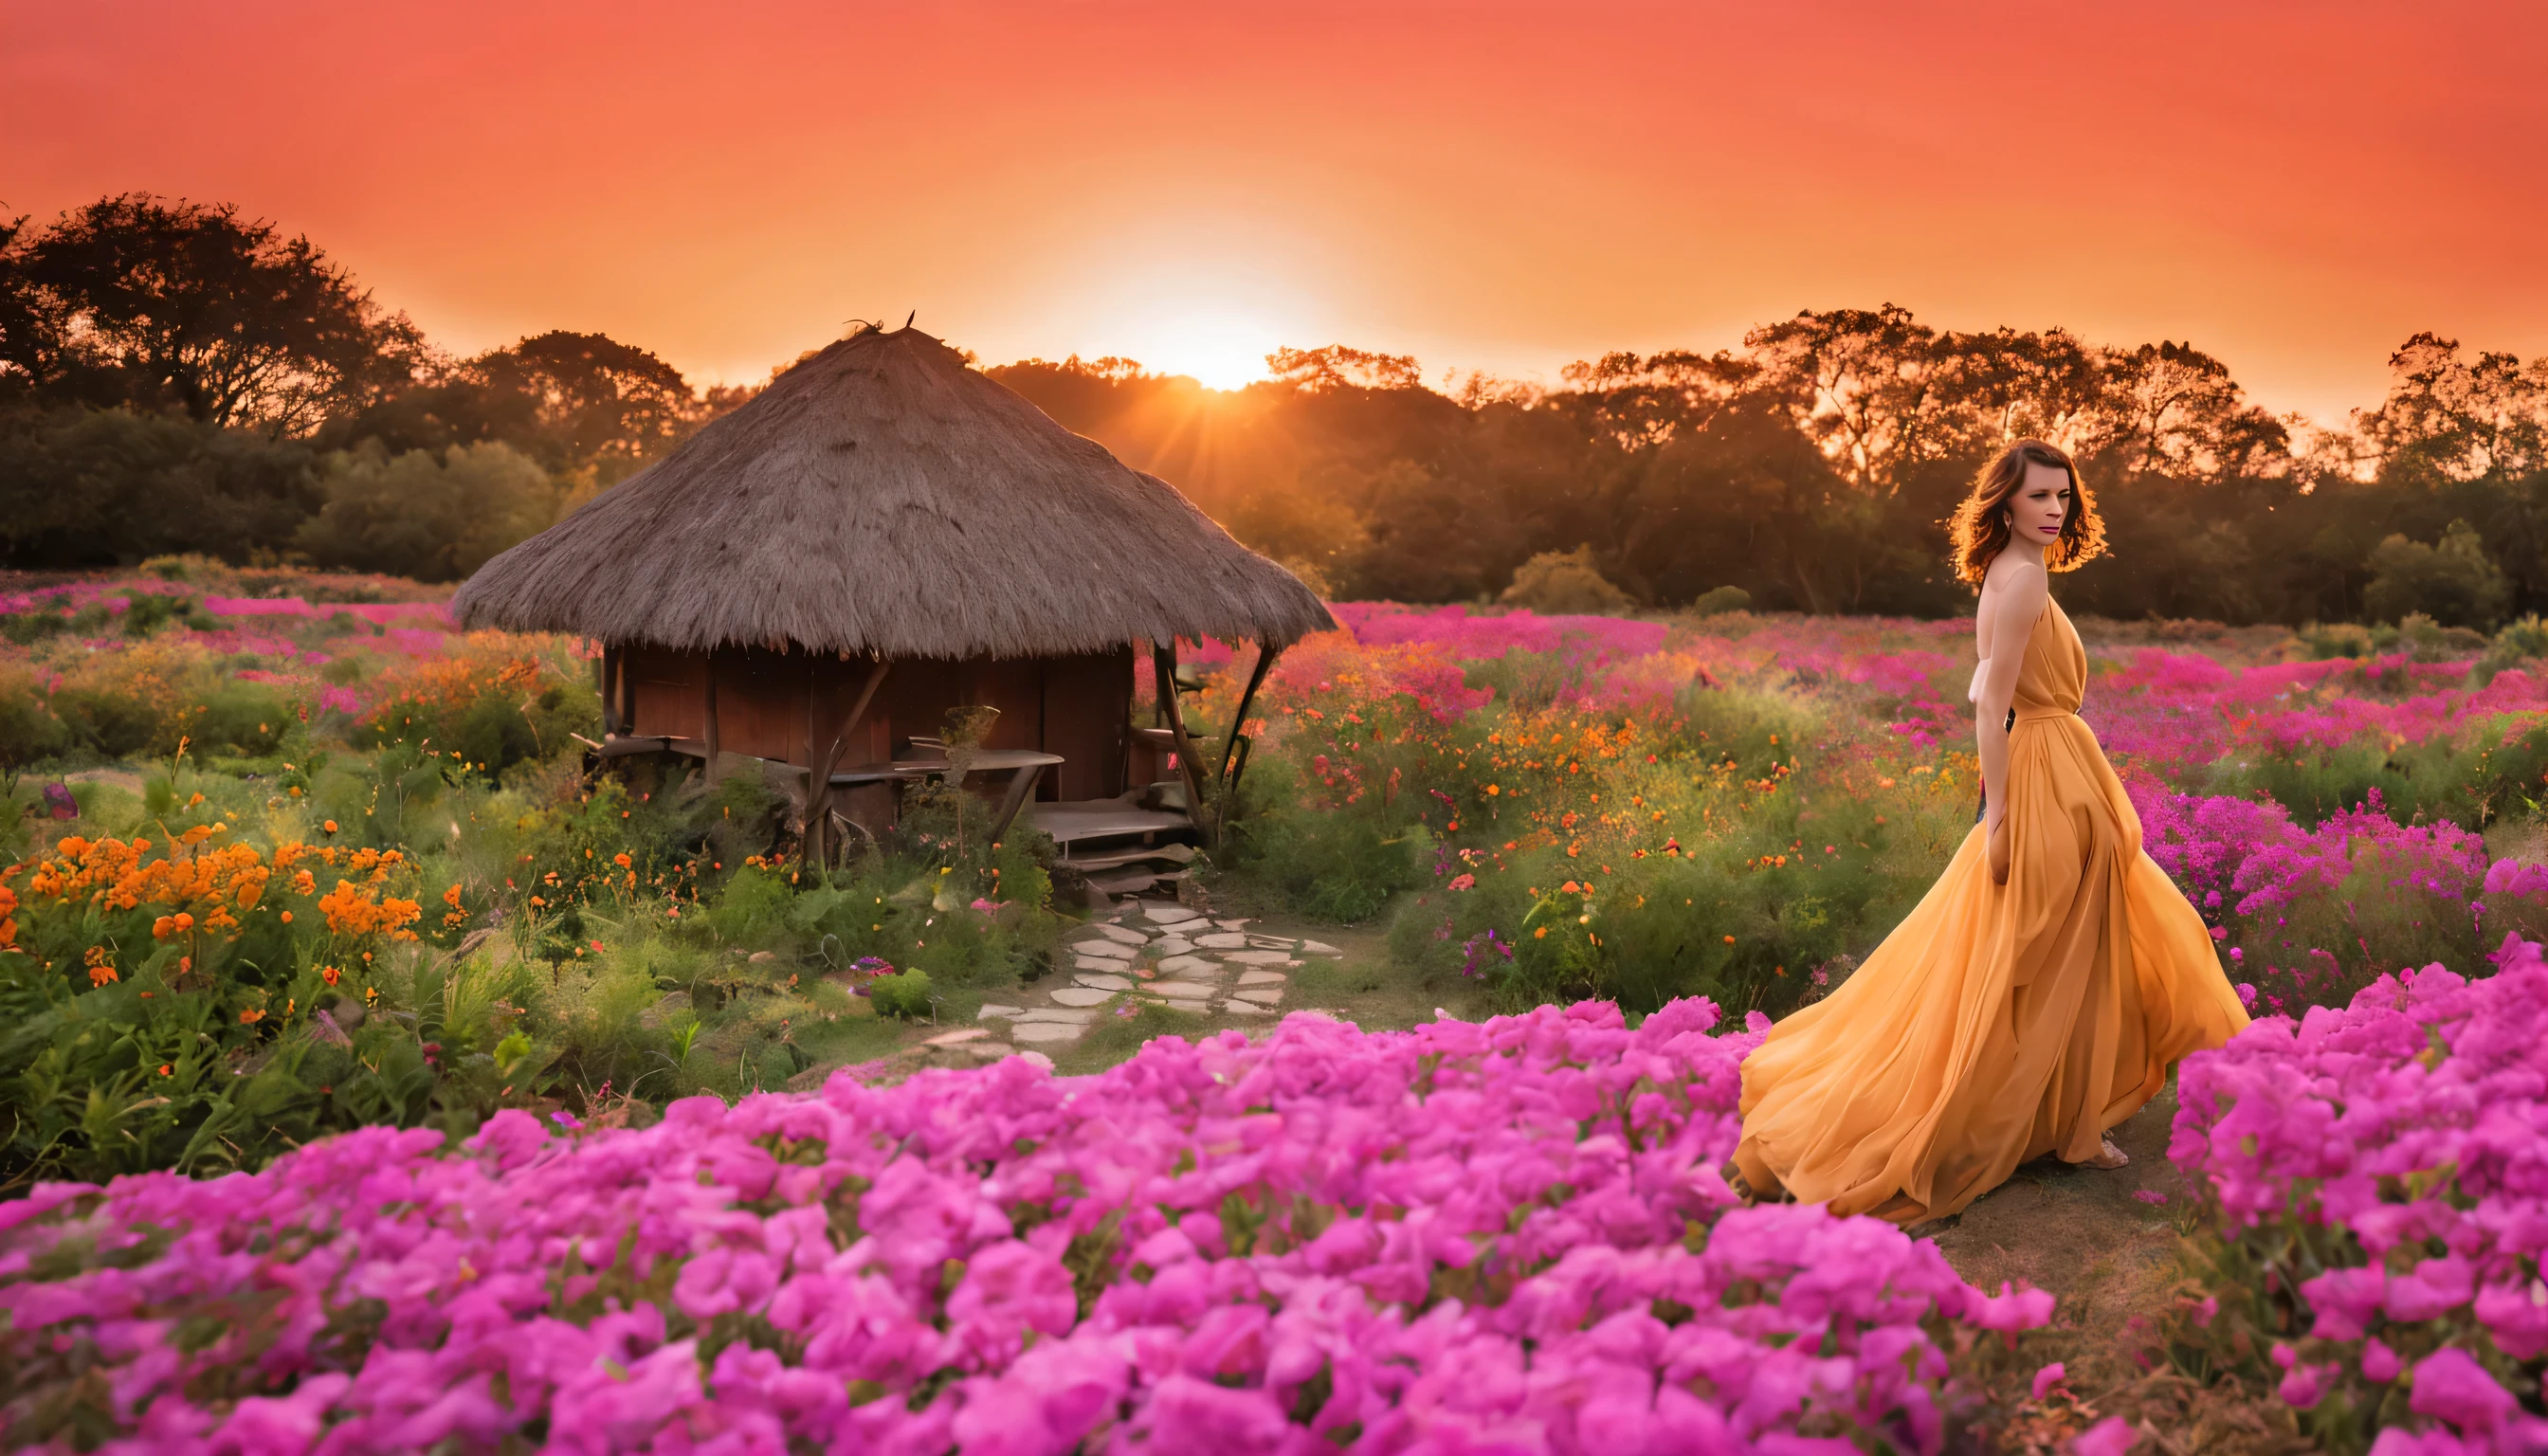 優雅飄逸的仙女, "米拉喬沃維奇 (Milla Jovovich) 穿著紫水晶長裙", 在一個場景中. 迷人的奇幻世界. 雄偉的山脈在背景中拔地而起, 勾勒出青翠寧靜的山谷. 前景中出現一座風景如畫的鄉村別墅, 擁有質樸的木造和茅草屋頂, 完美融入現場. 房子附近蜿蜒的清澈溪流發出舒緩的聲音, 大自然舒緩的色彩為周圍描繪出寧靜的調色板. 蝴蝶和蜜蜂在小花園裡翩翩起舞. 夕陽將天空染成橘色和粉紅色, 在地平線上創造出神奇的奇觀.
